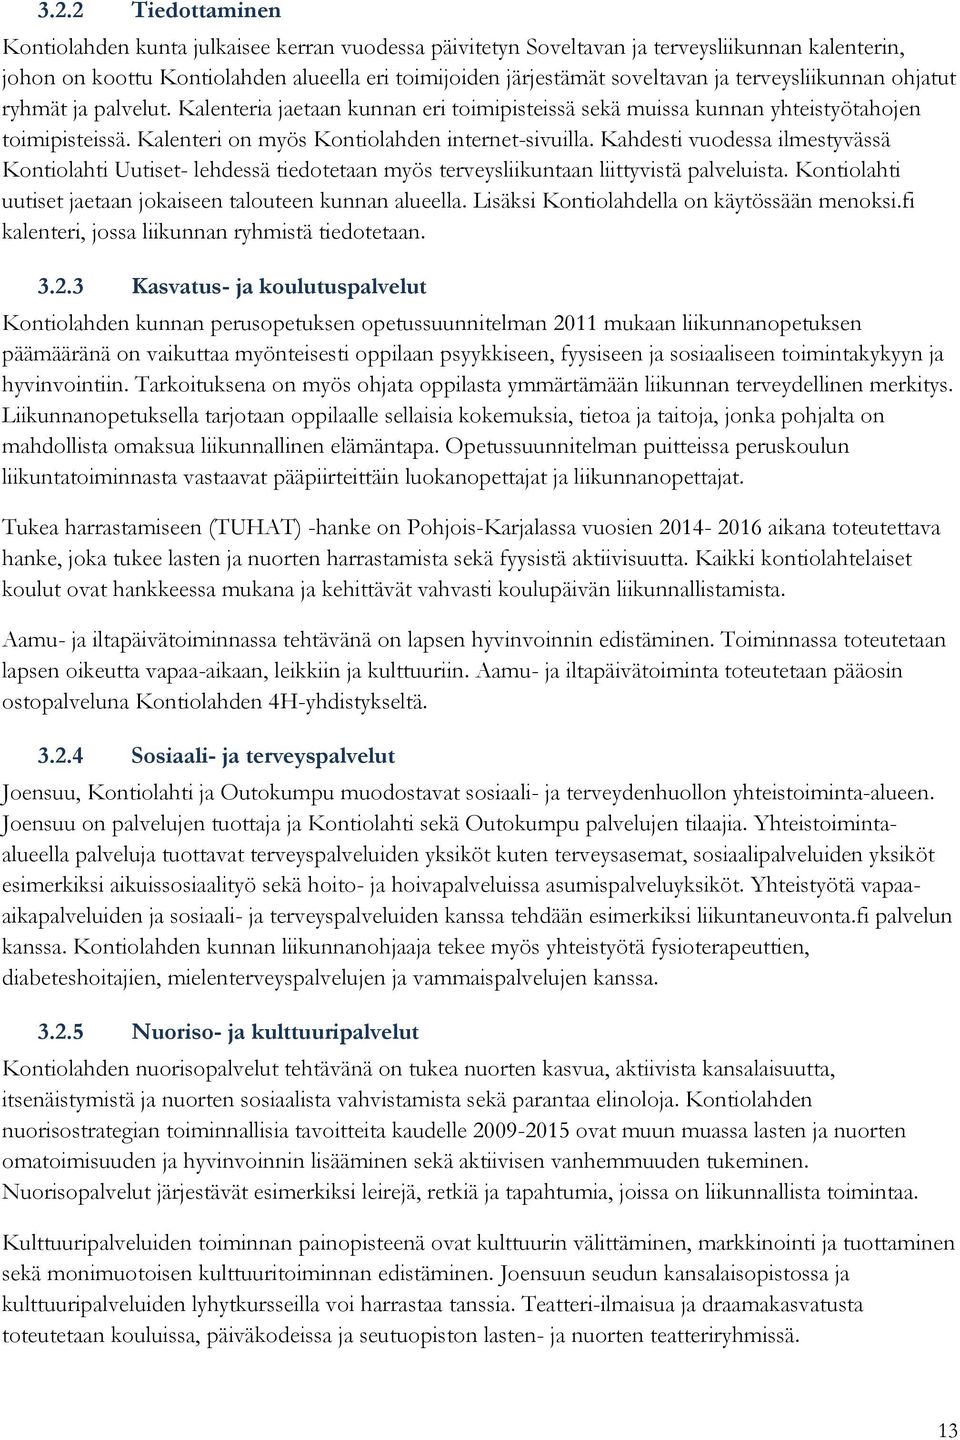 Kahdesti vuodessa ilmestyvässä Kontiolahti Uutiset- lehdessä tiedotetaan myös terveysliikuntaan liittyvistä palveluista. Kontiolahti uutiset jaetaan jokaiseen talouteen kunnan alueella.